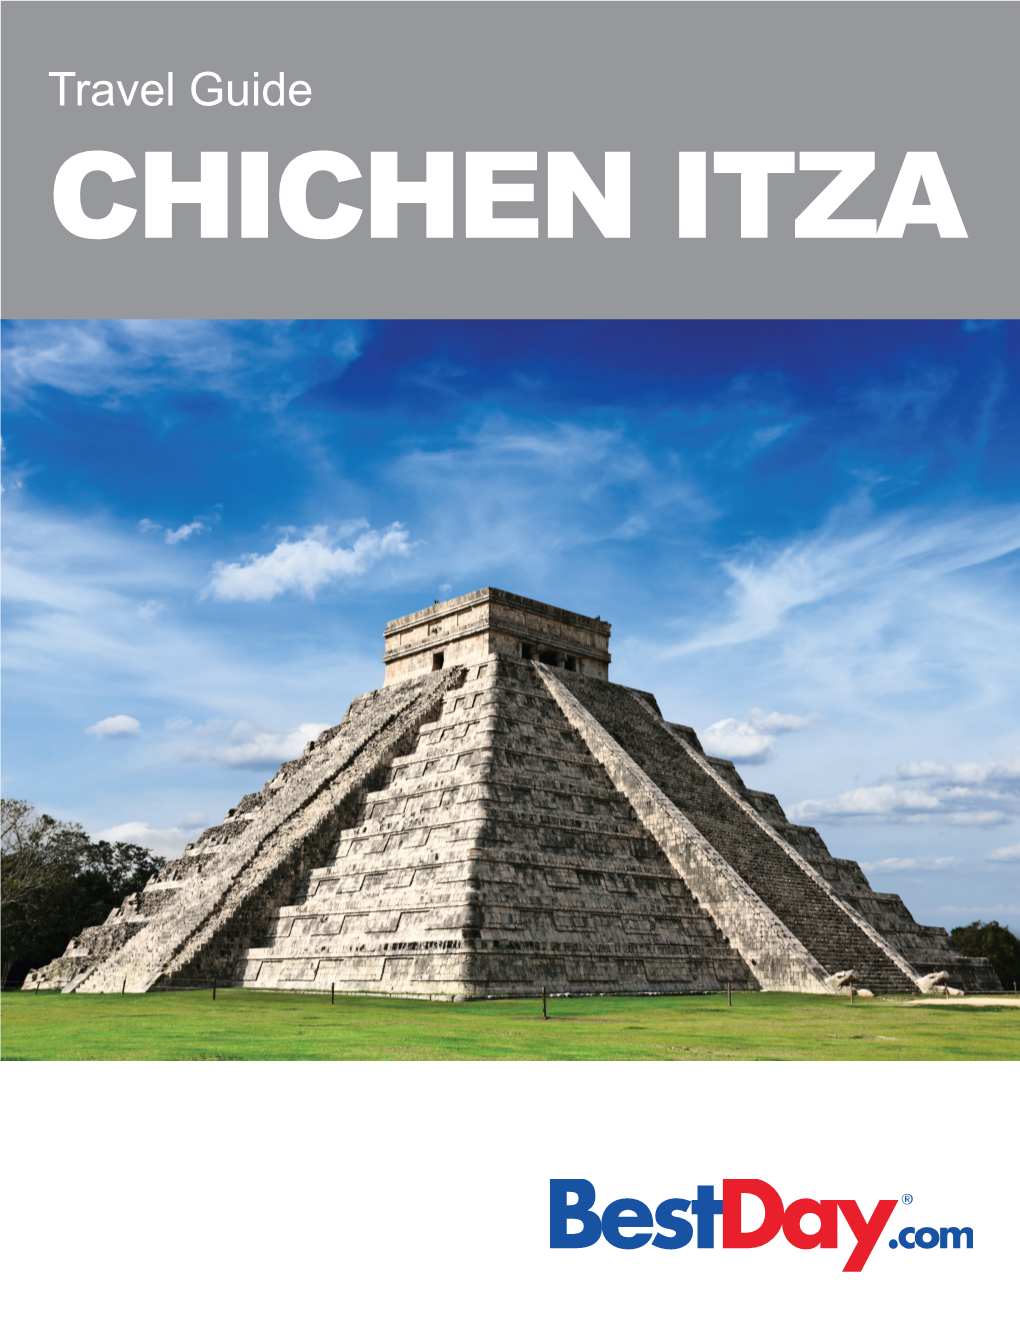 Travel Guide CHICHEN ITZA Contents